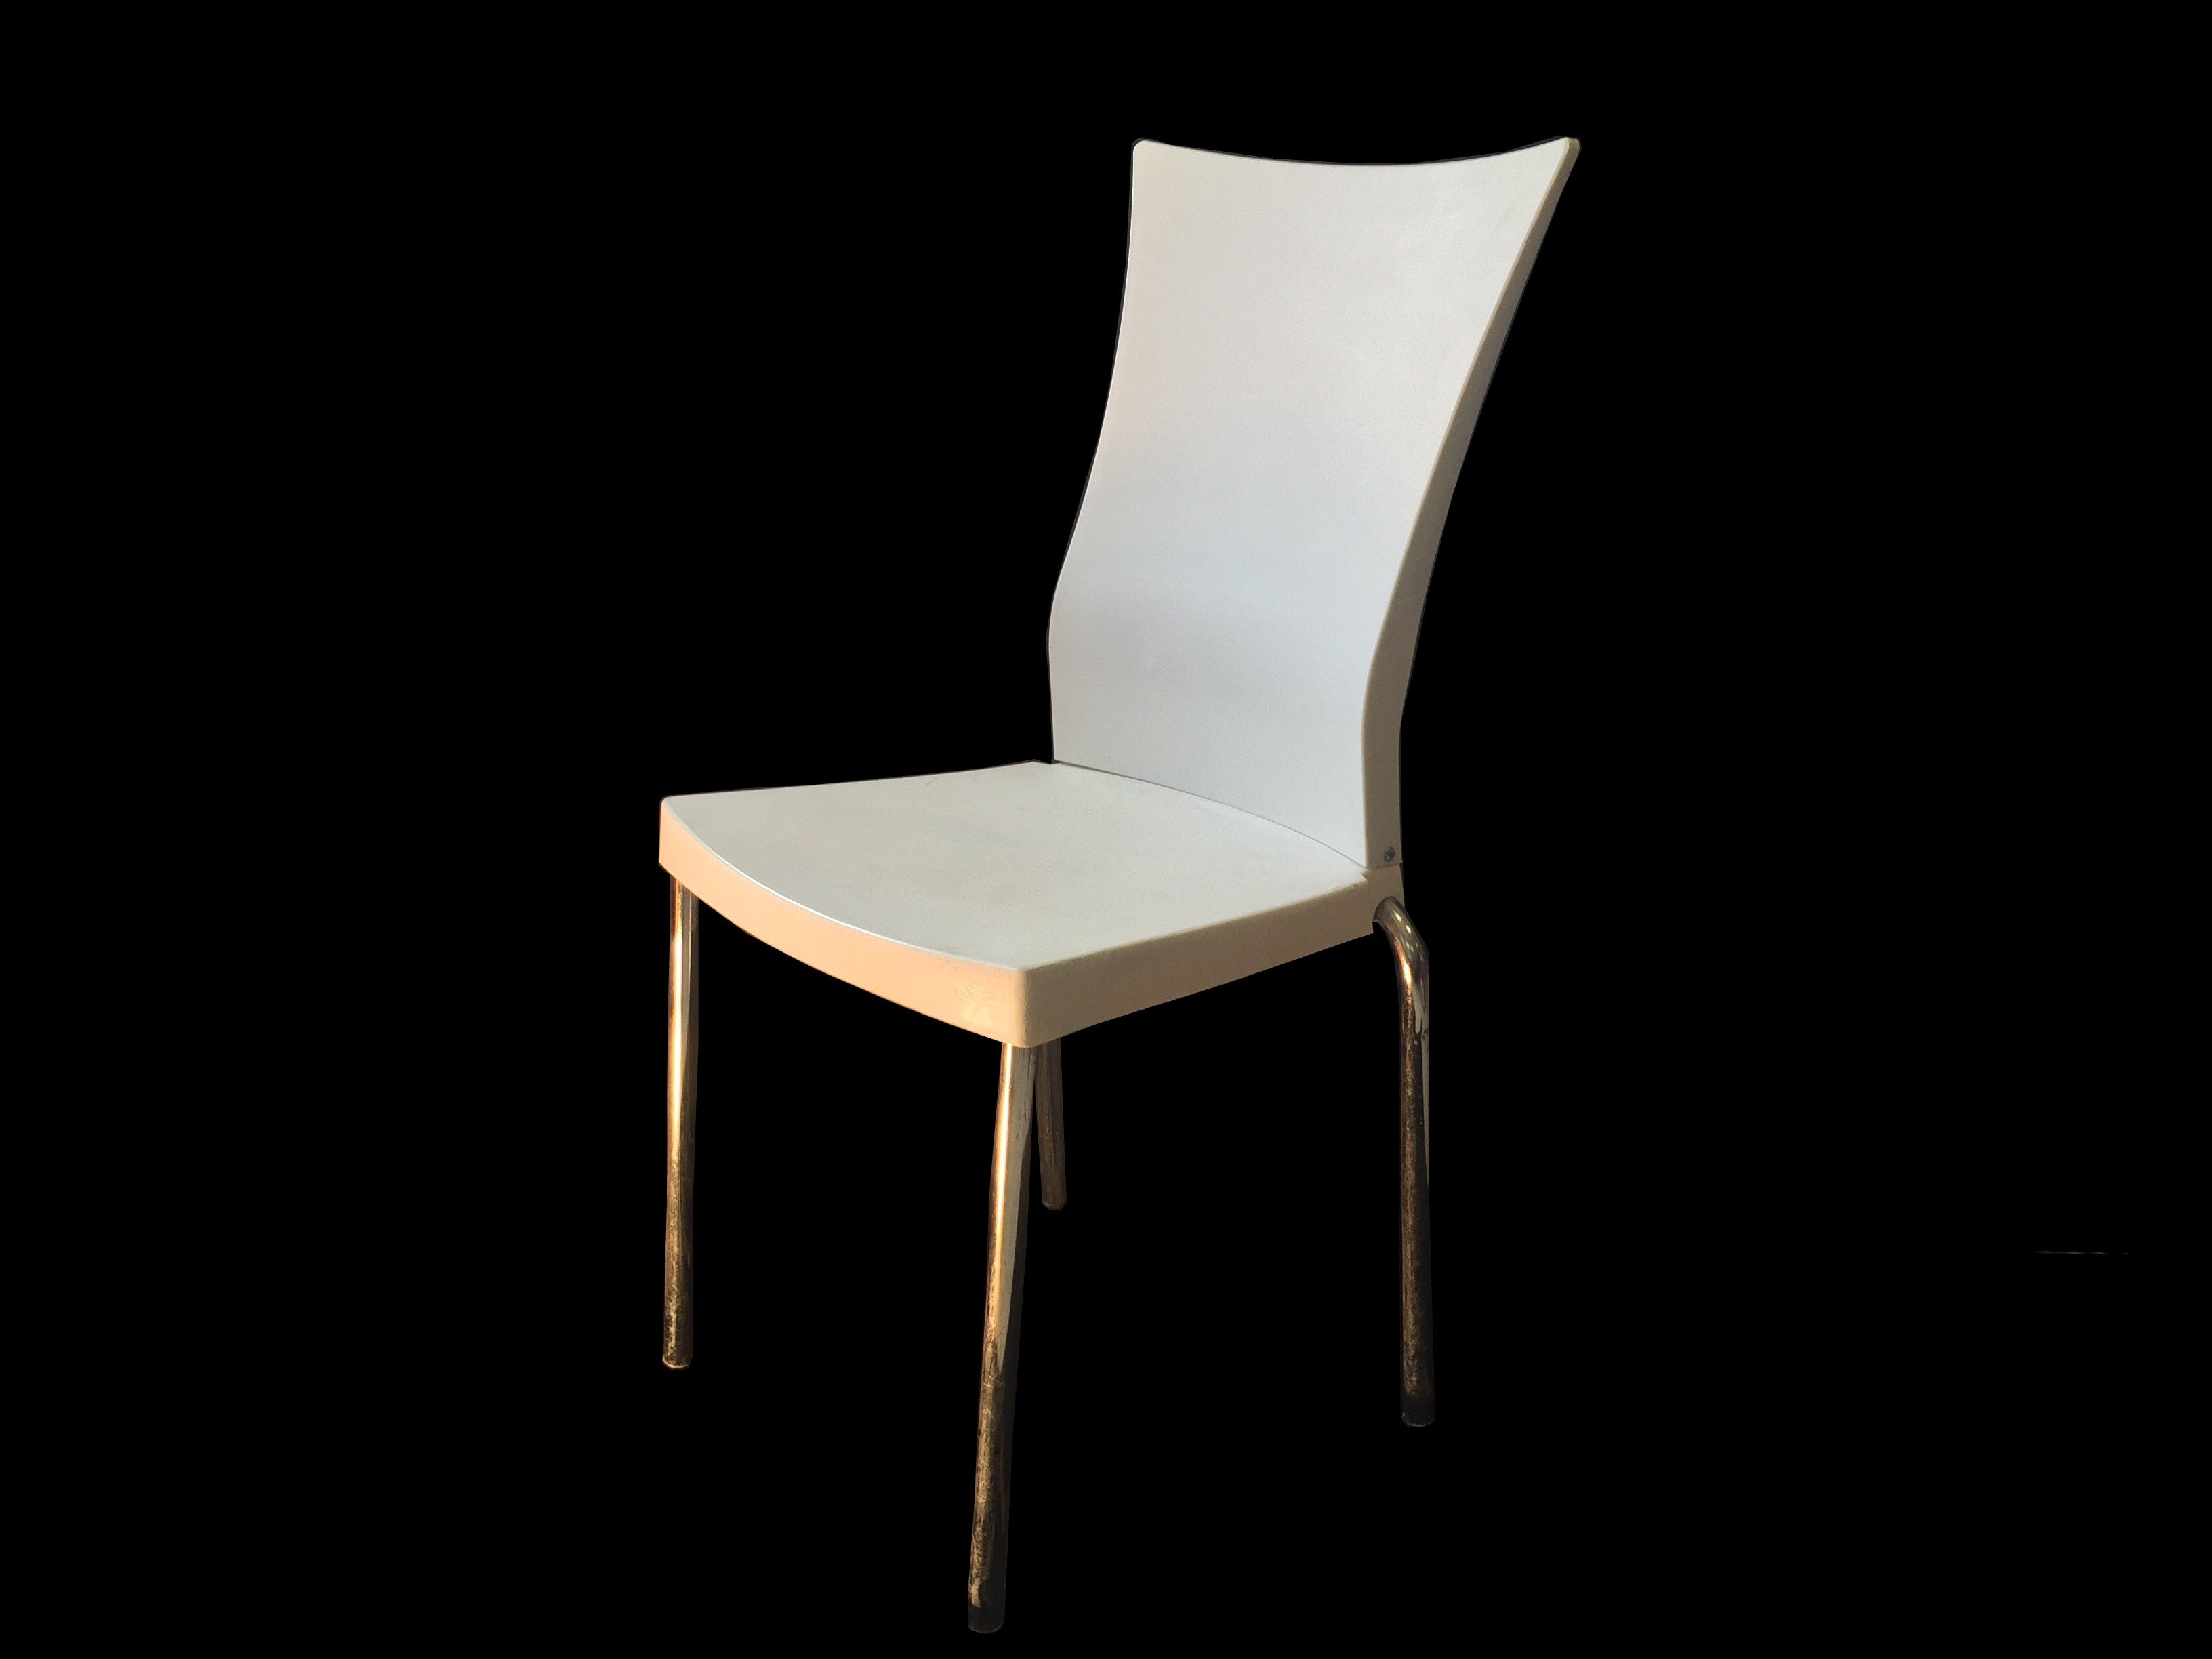 (Plastic chair Nickel legs(2 types -דוד כליף אירועים בע"מ